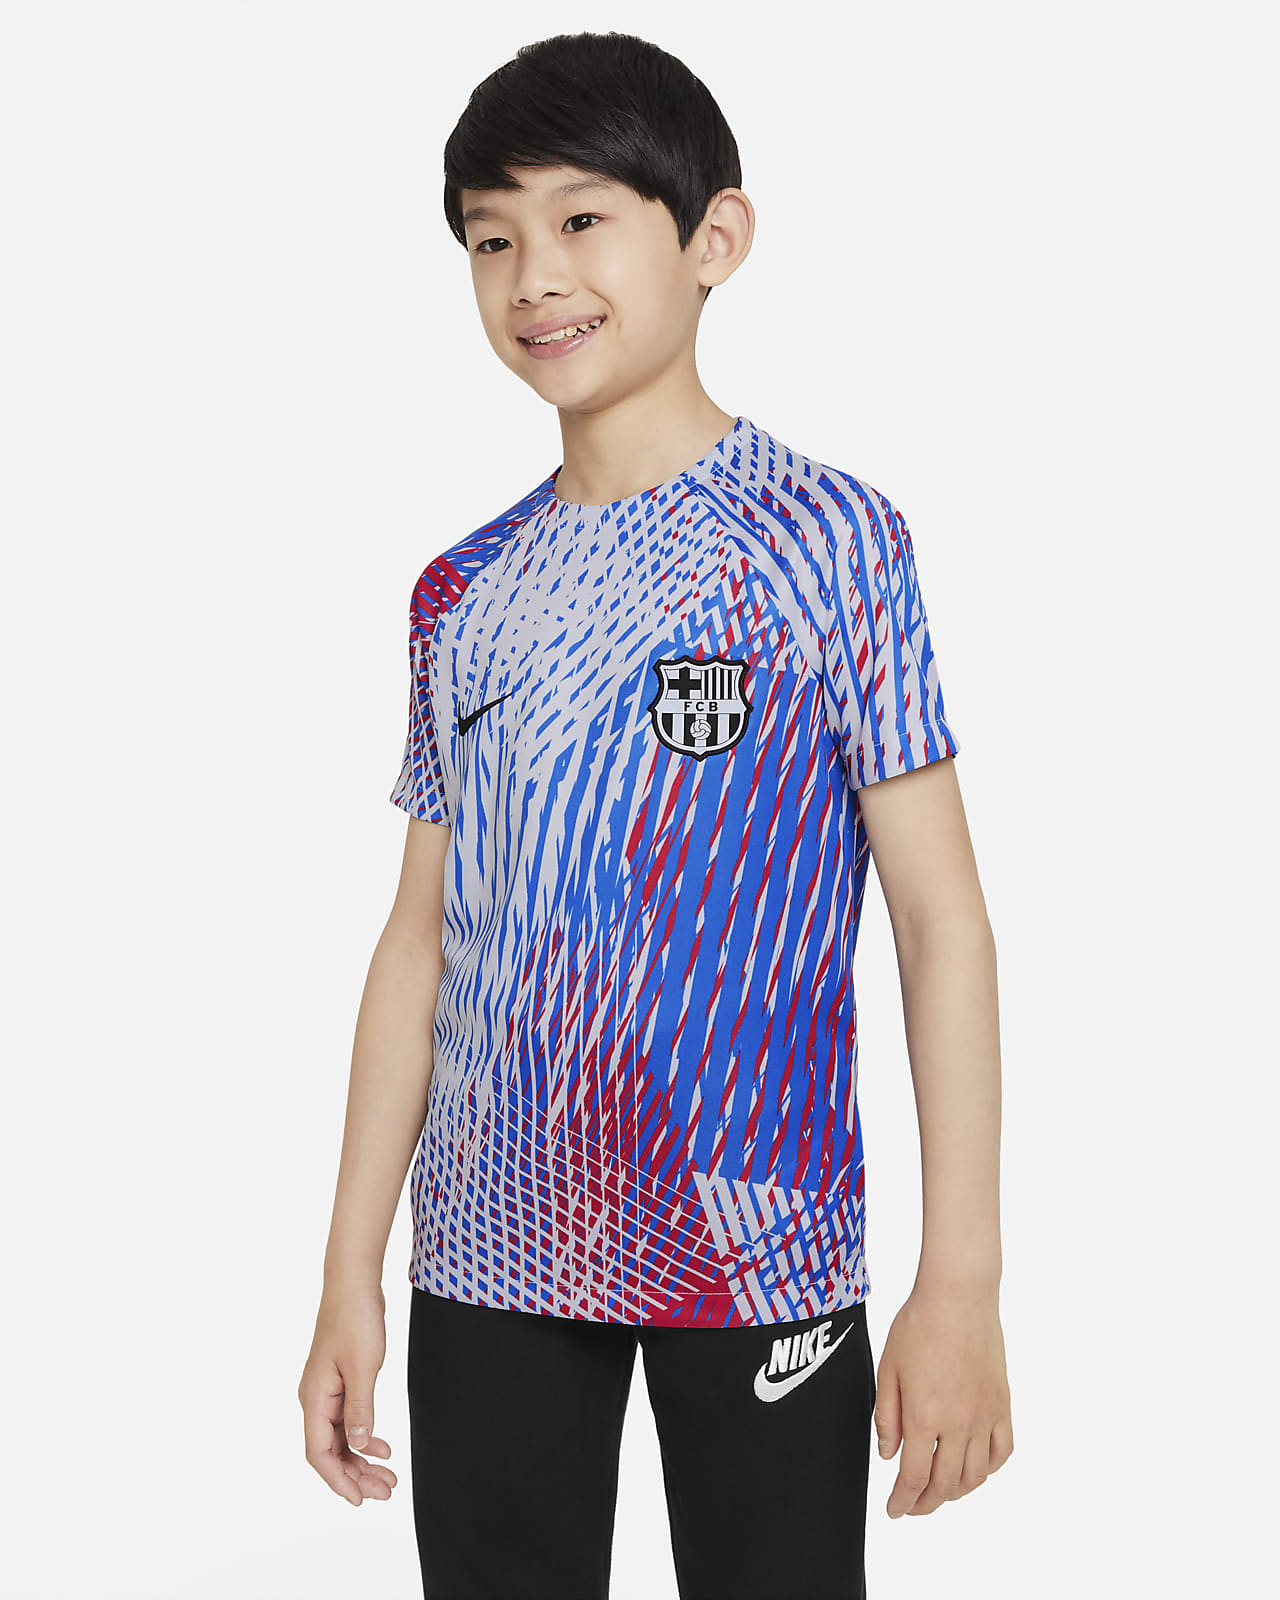 Karu encanto si puedes FC Barcelona Camiseta de fútbol para antes del partido Nike Dri-FIT - Niño/a.  Nike ES